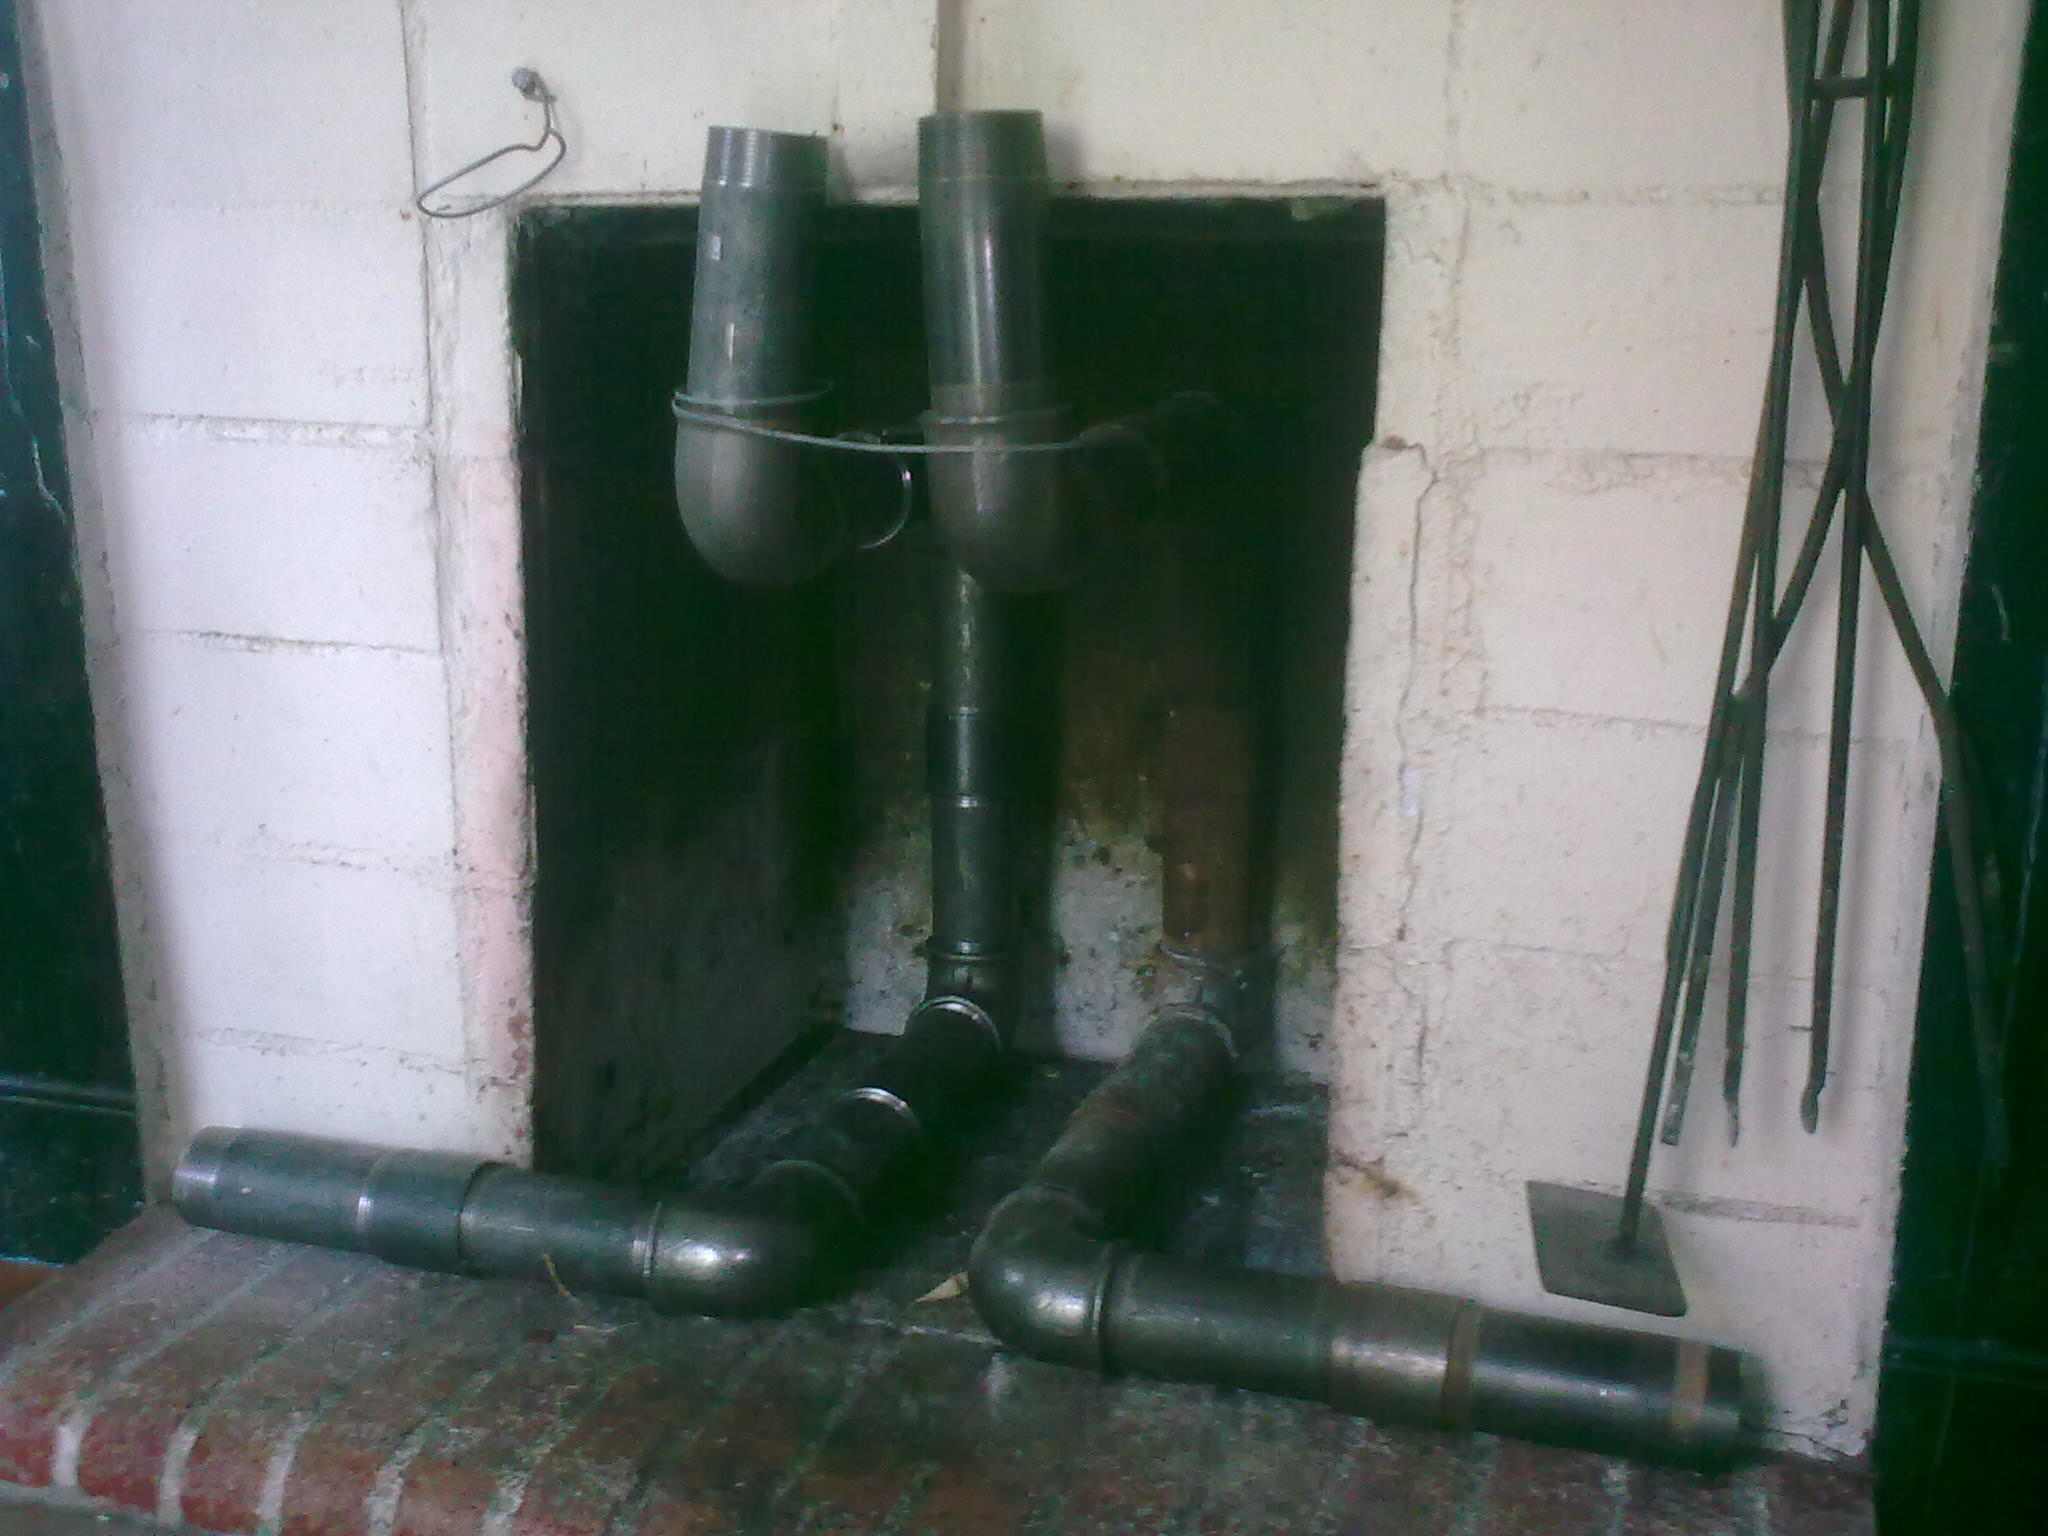 Comment fonctionne un récupérateur de chaleur de cheminée ?